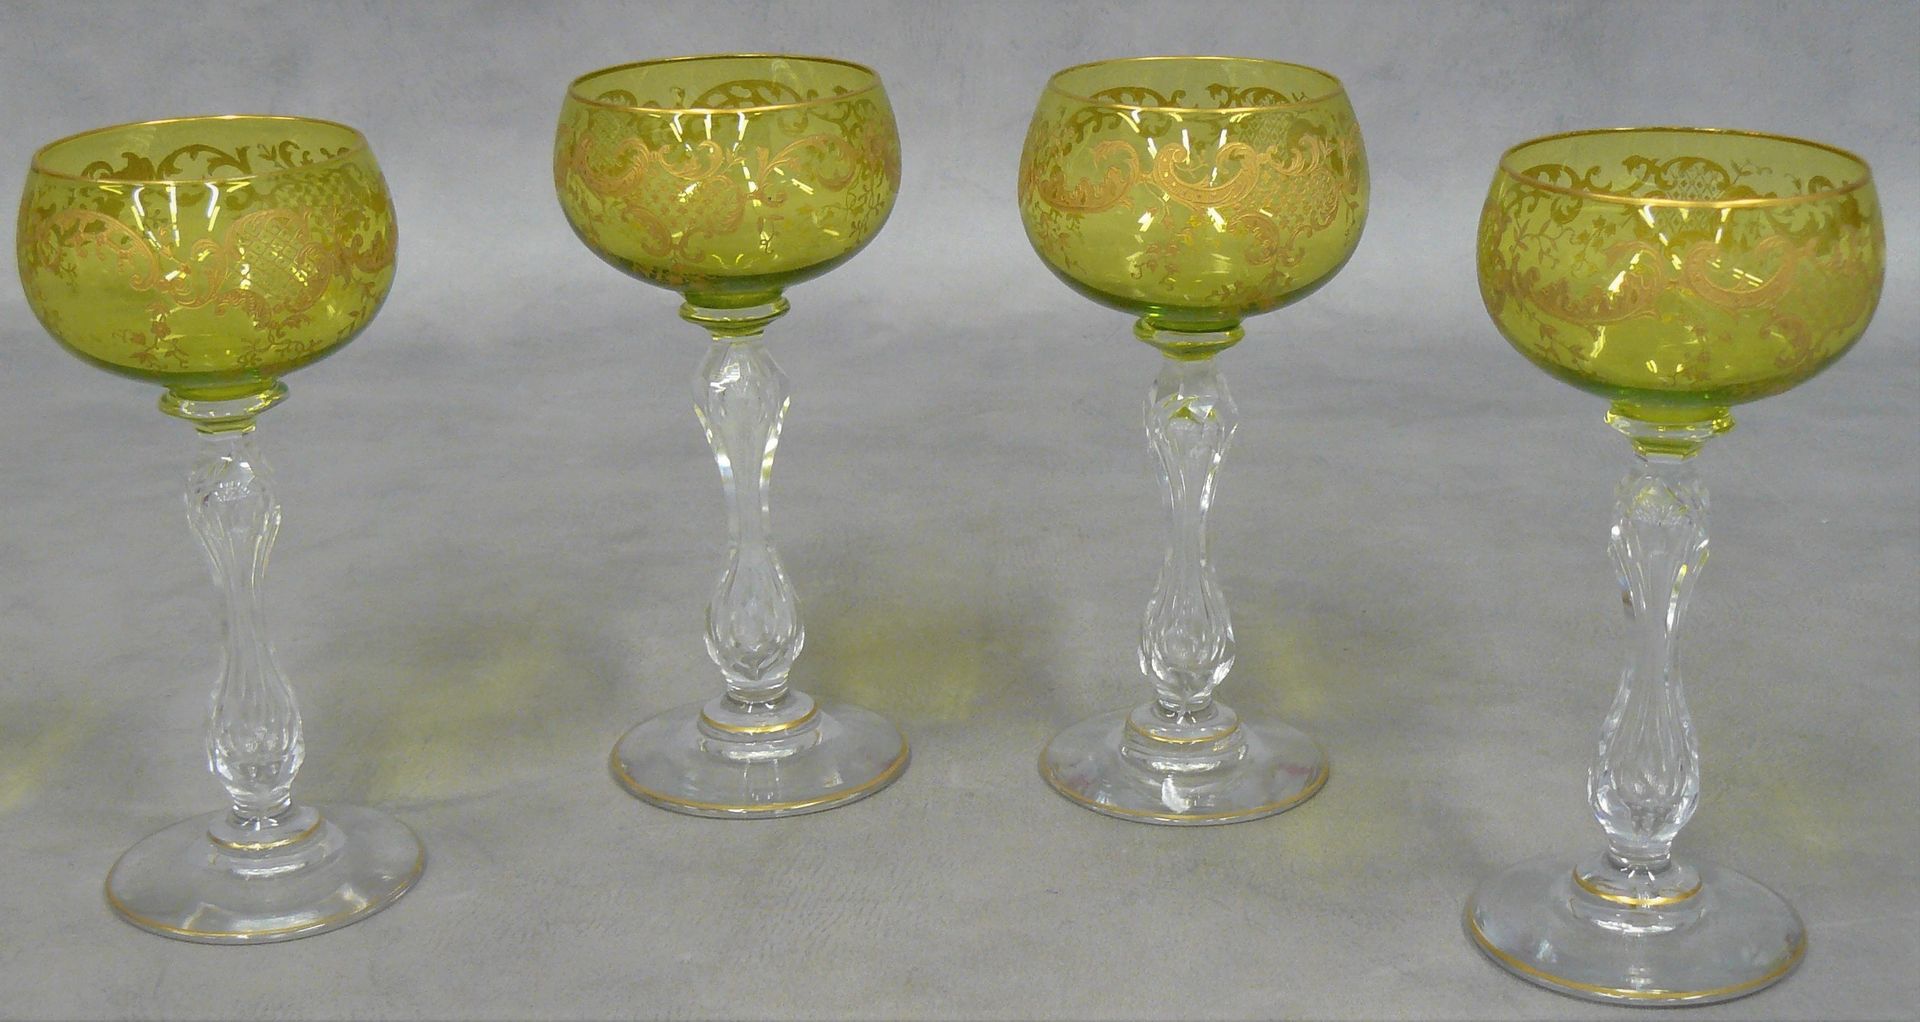 Null juego de cuatro copas de vino blanco de cristal teñido de verde con reflejo&hellip;